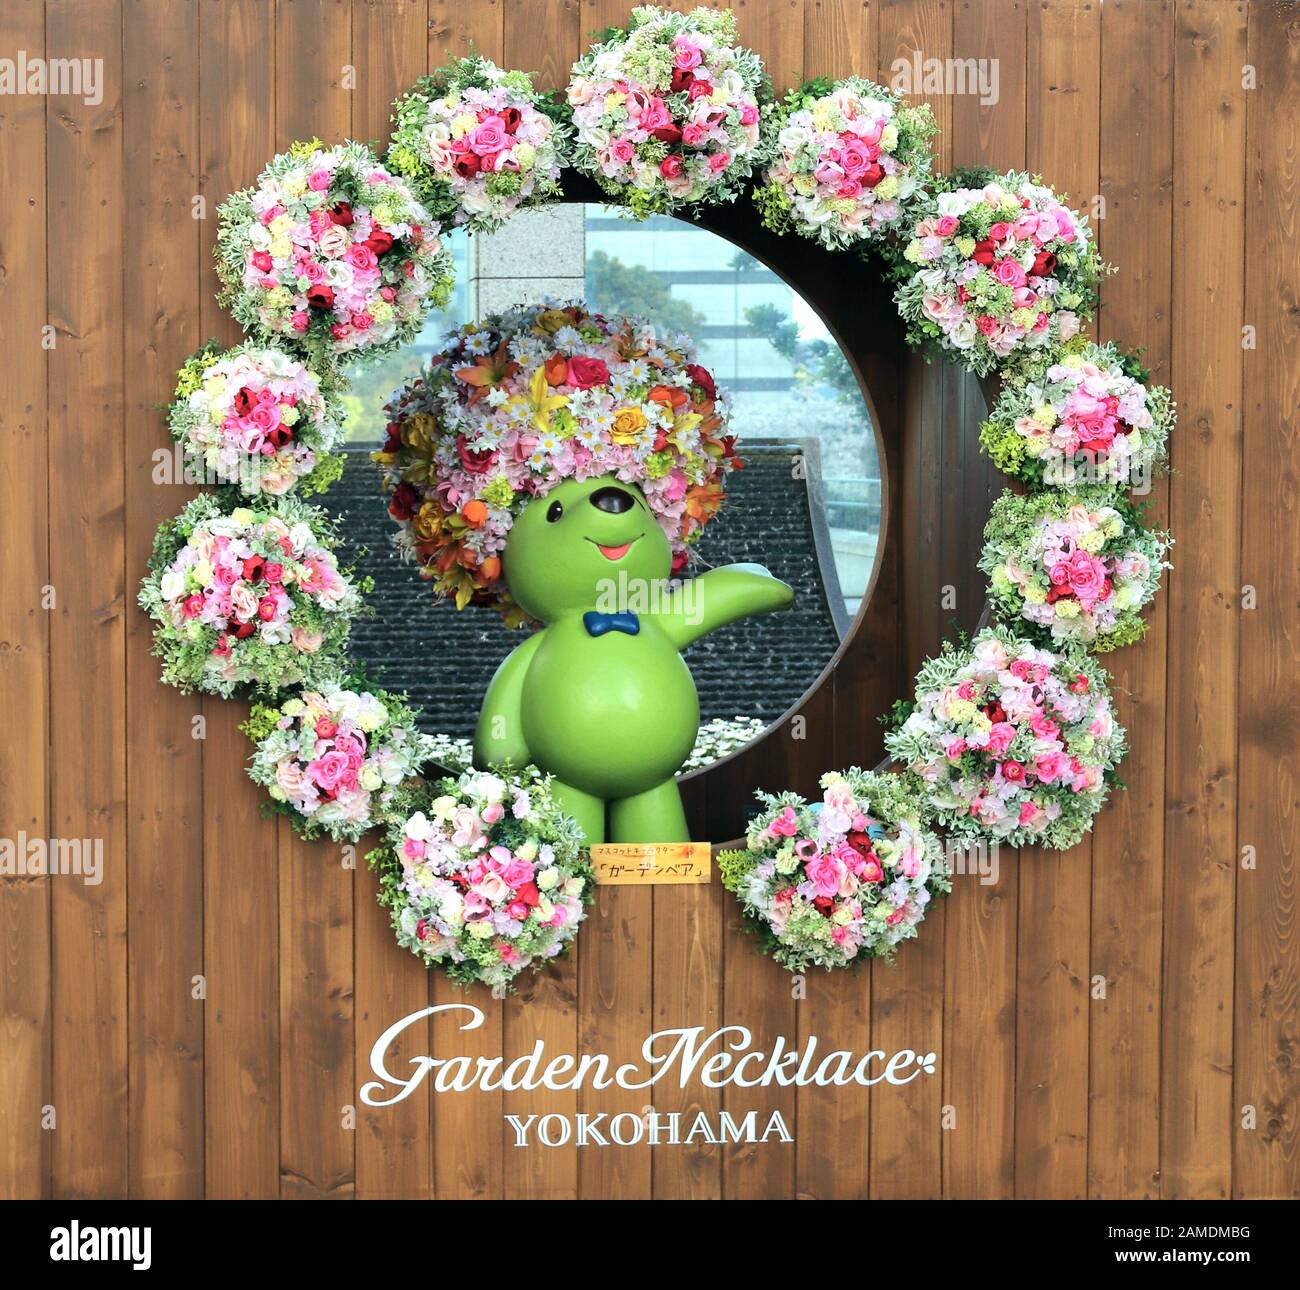 Yokohama, JAPAN - 5. April 2019: Maskottchen des Garten-Halskette-Gartenbären auf der 35 nationalen städtischen Grünmesse Yokohama im Satoyama-Garten Stockfoto